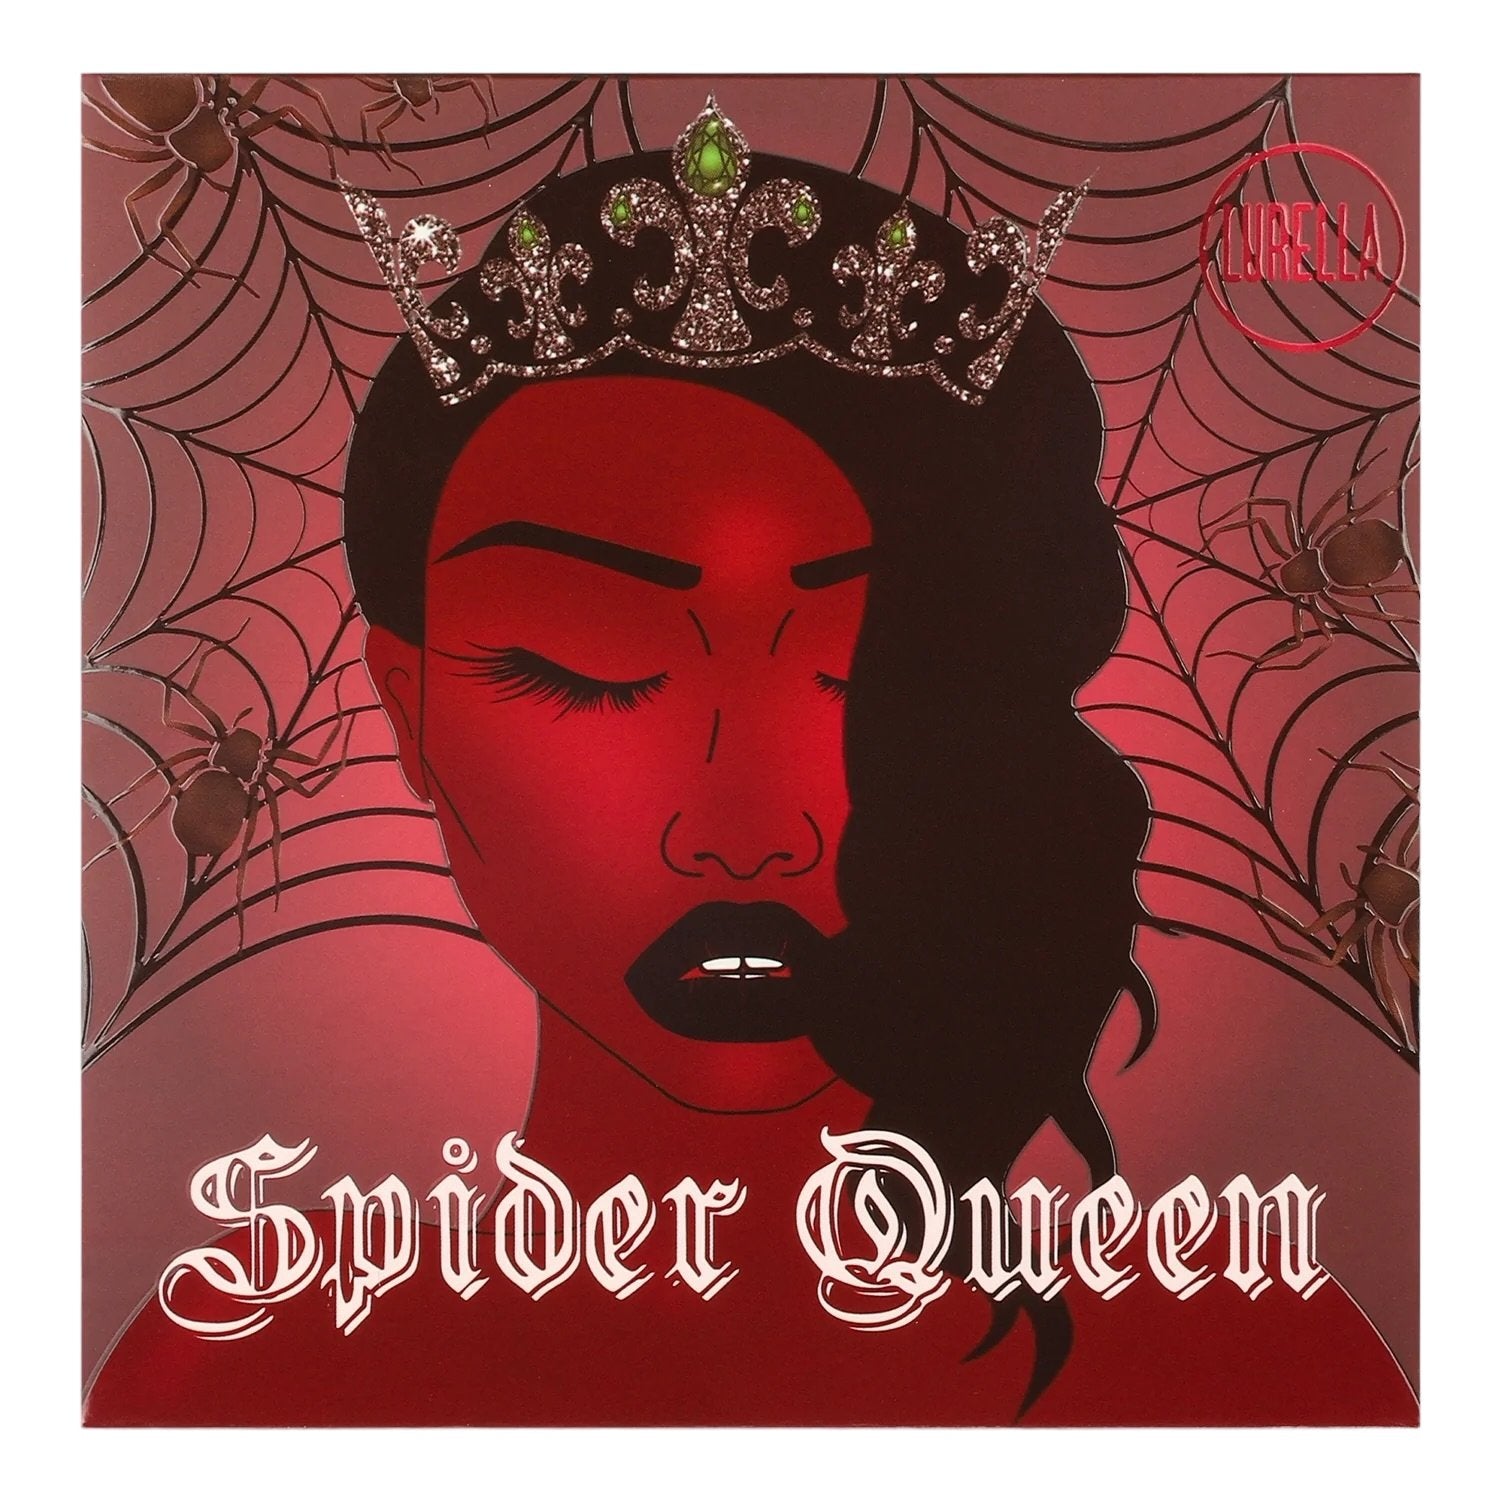 Spider Queen - DaizyKat Cosmetics Spider Queen Lurella Cosmetics Eyeshadow Palette